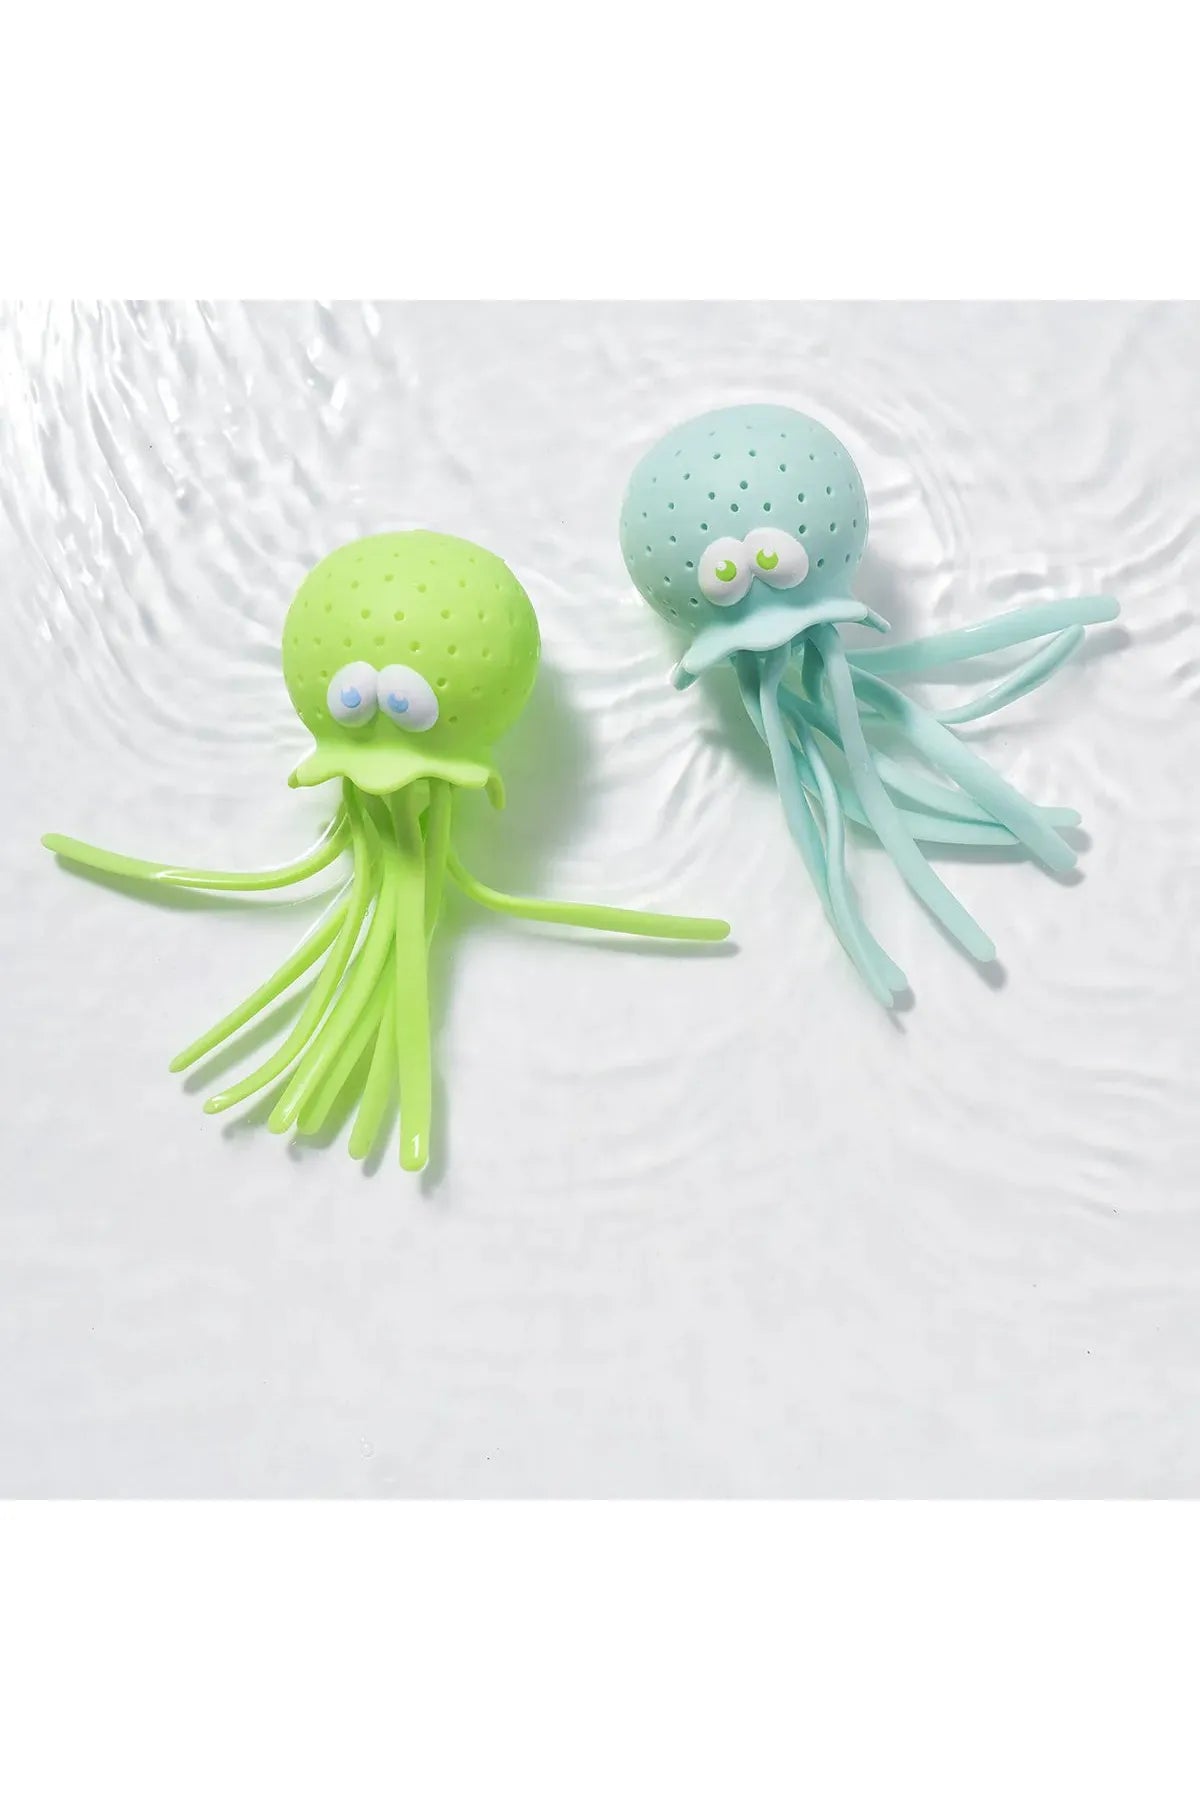 Octopus Bath Toys Mint/Baby Blue Set of 2